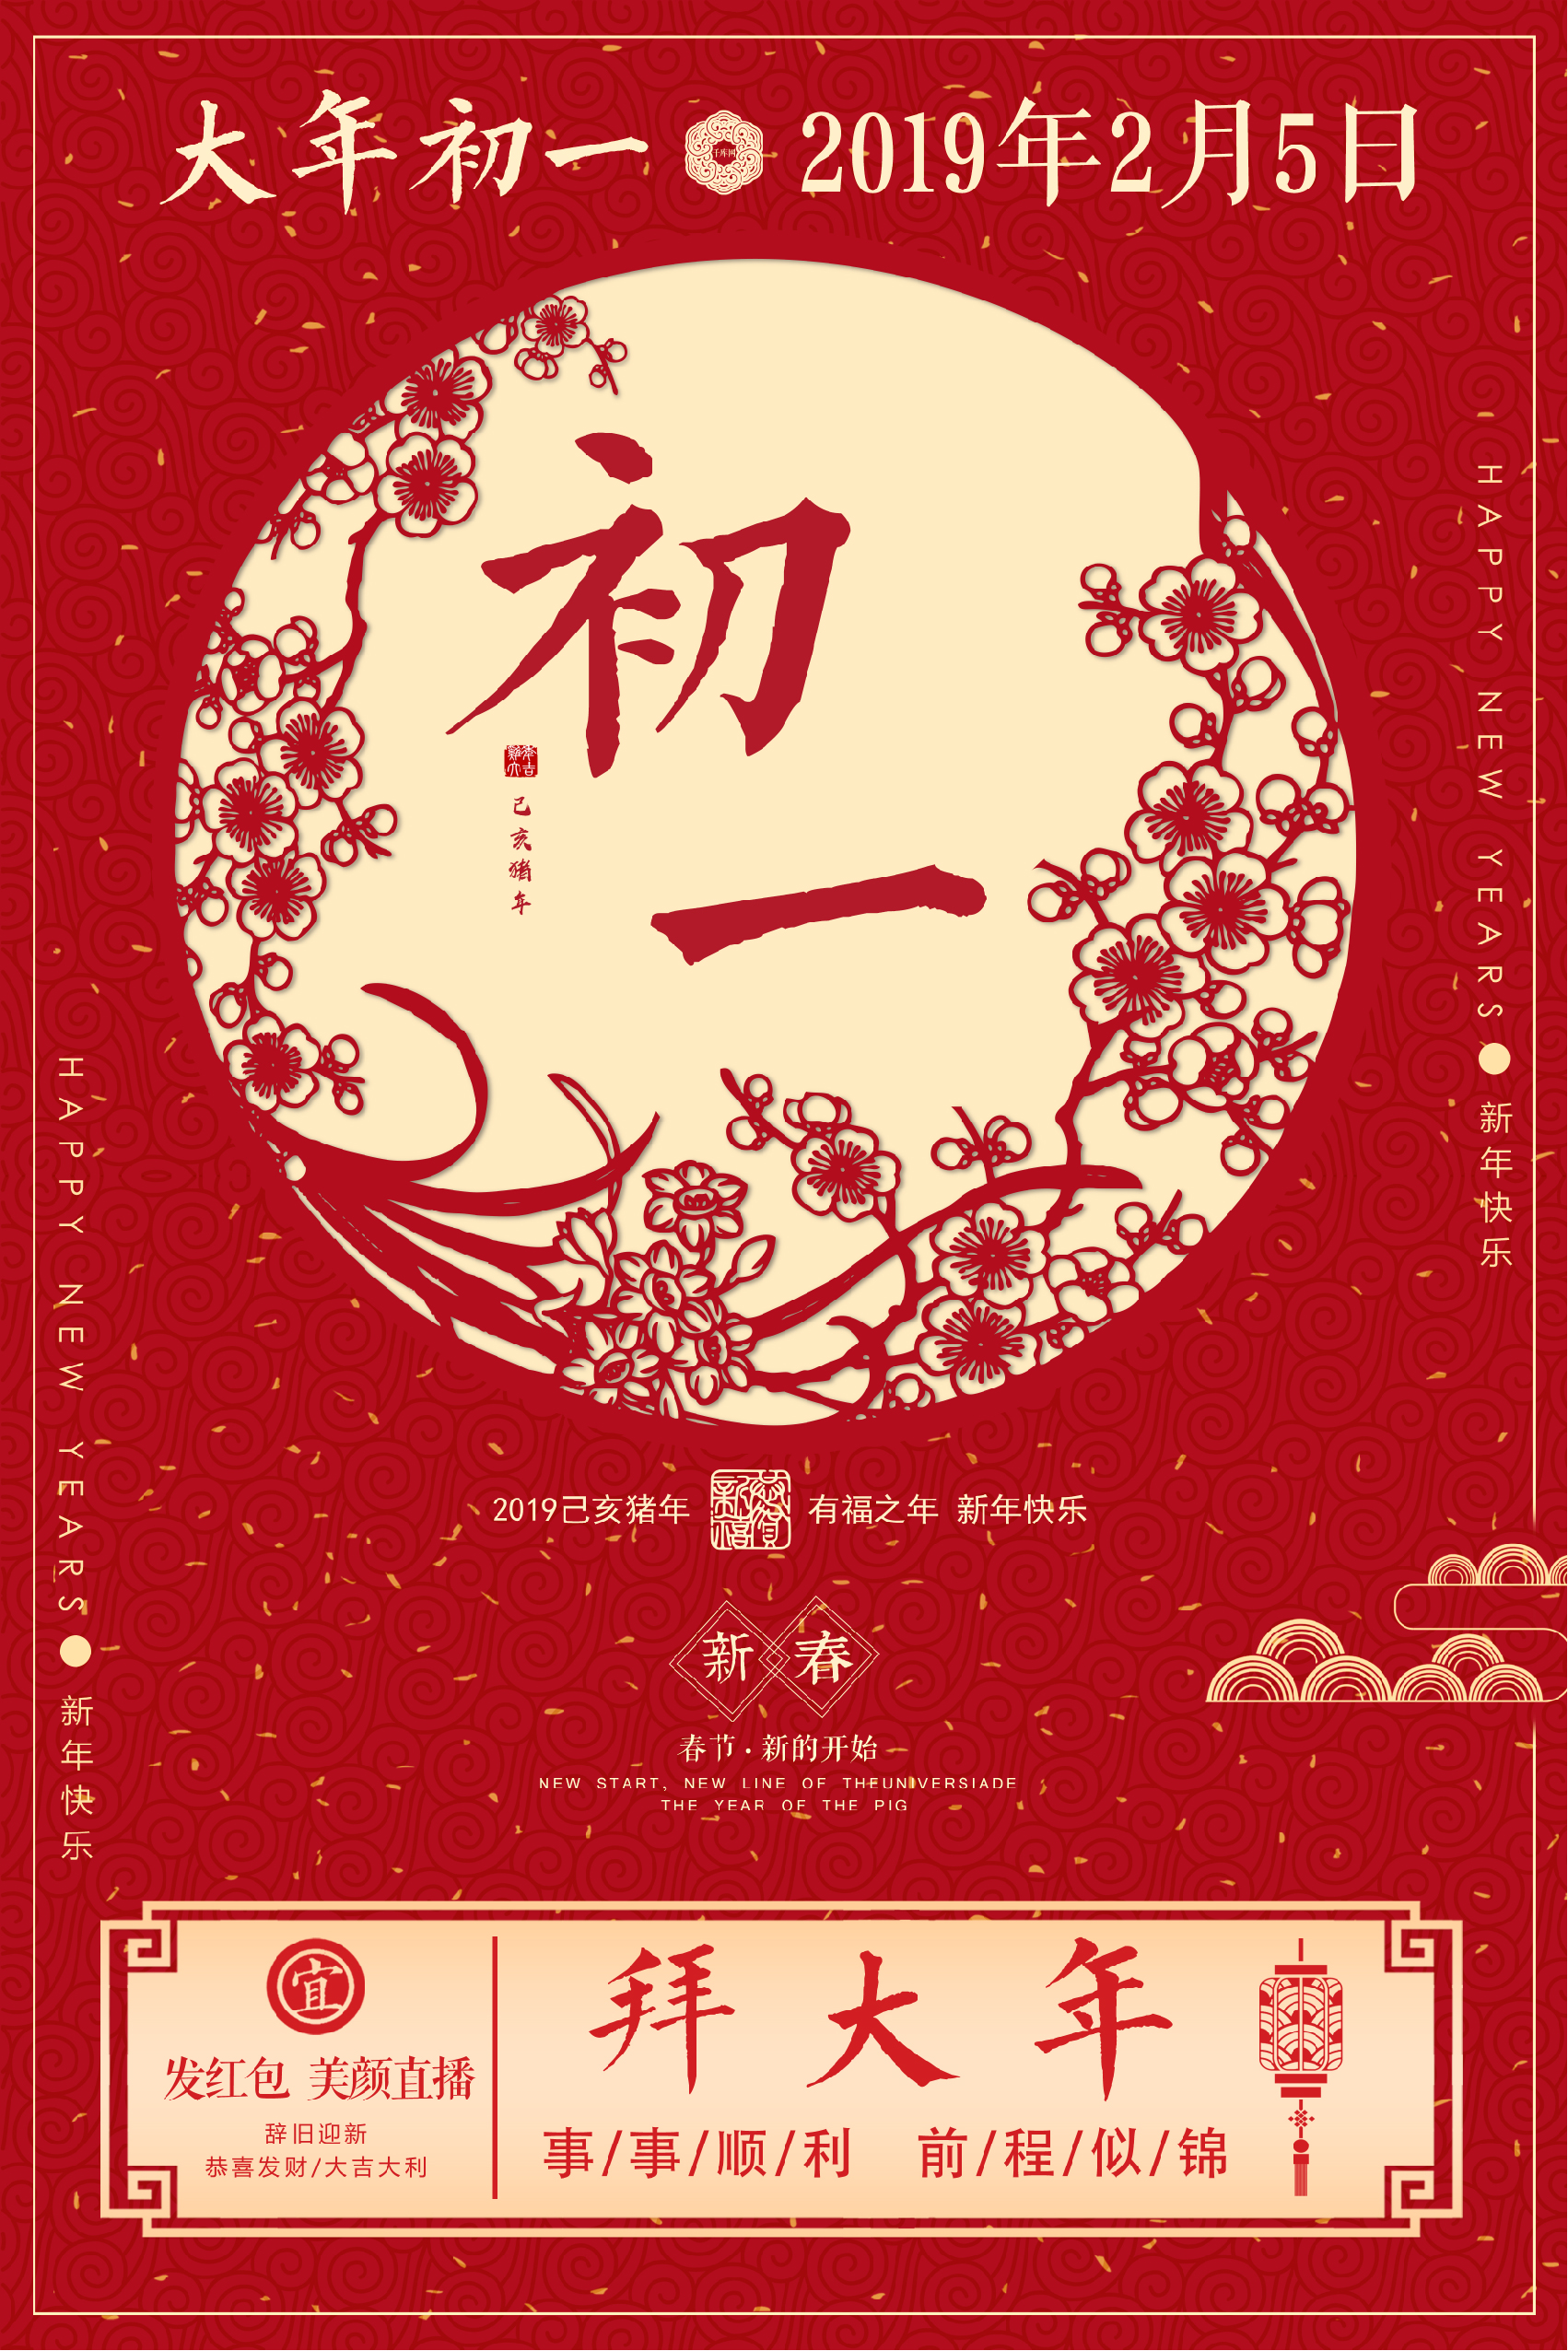 红色中国风初一海报图片